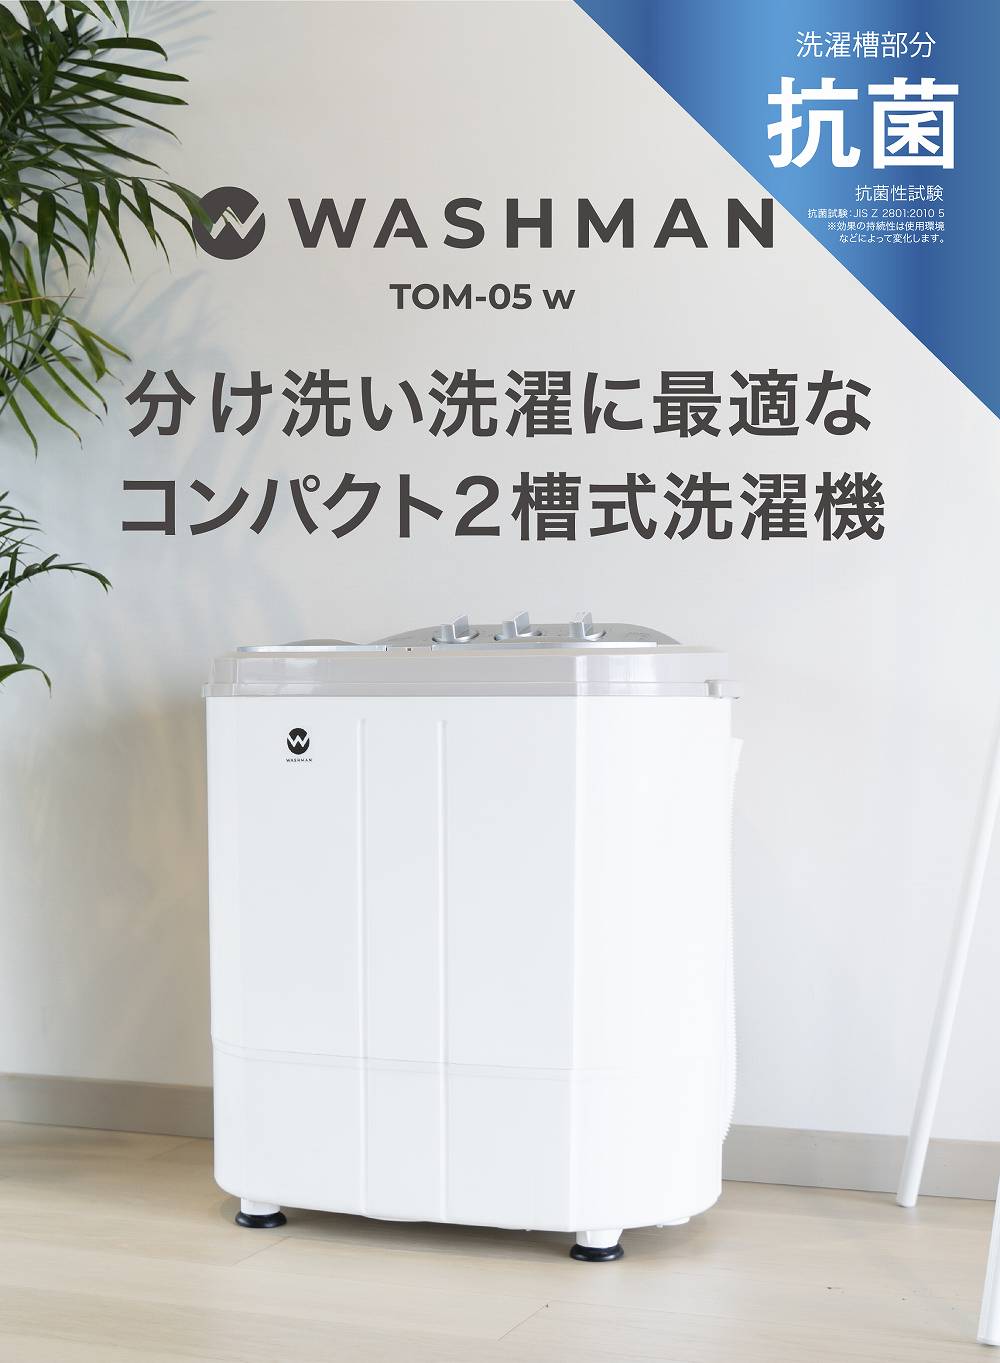 ウォッシュマン TOM-05w / 株式会社シービージャパン CB JAPAN CO.,LTD